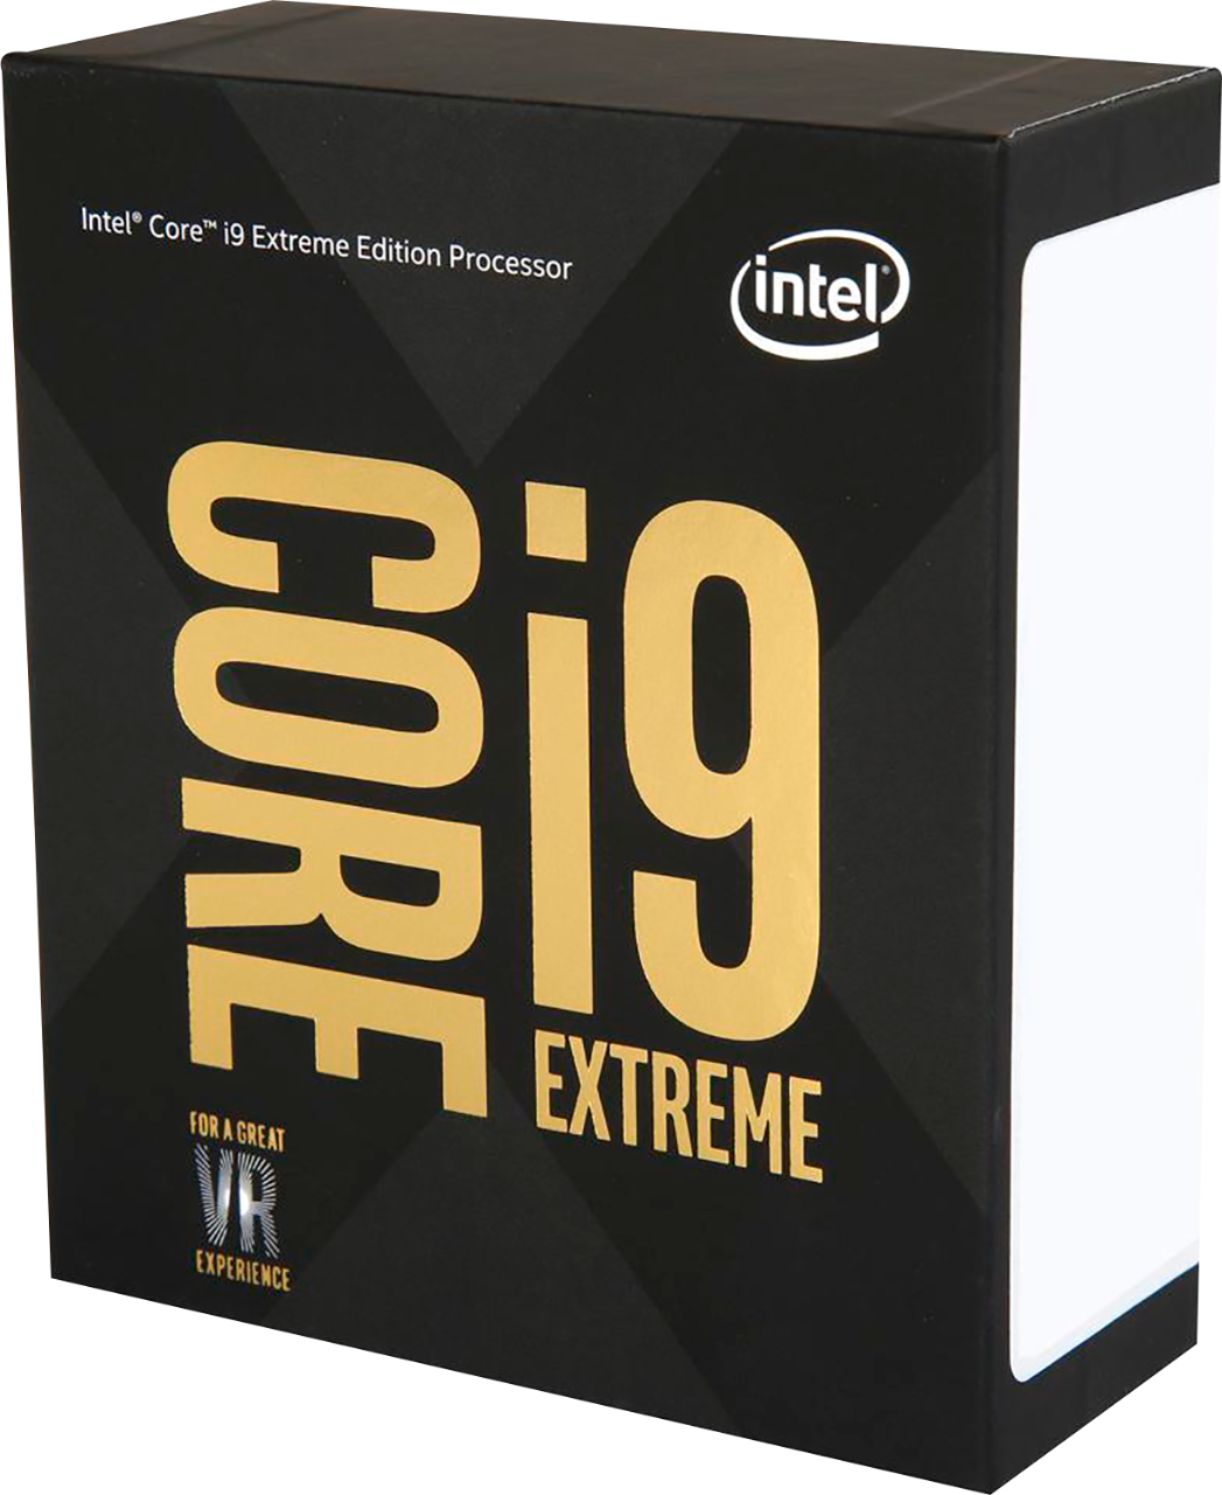 Intel Core i9-10980XE Review 18 Cores of Pure Intel - ServeTheHome